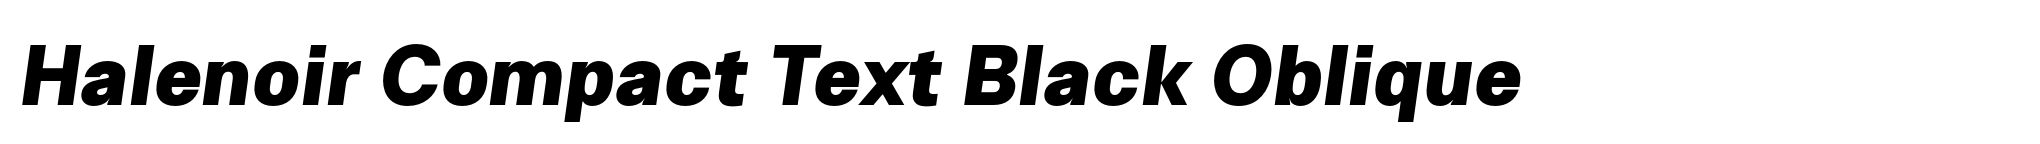 Halenoir Compact Text Black Oblique image